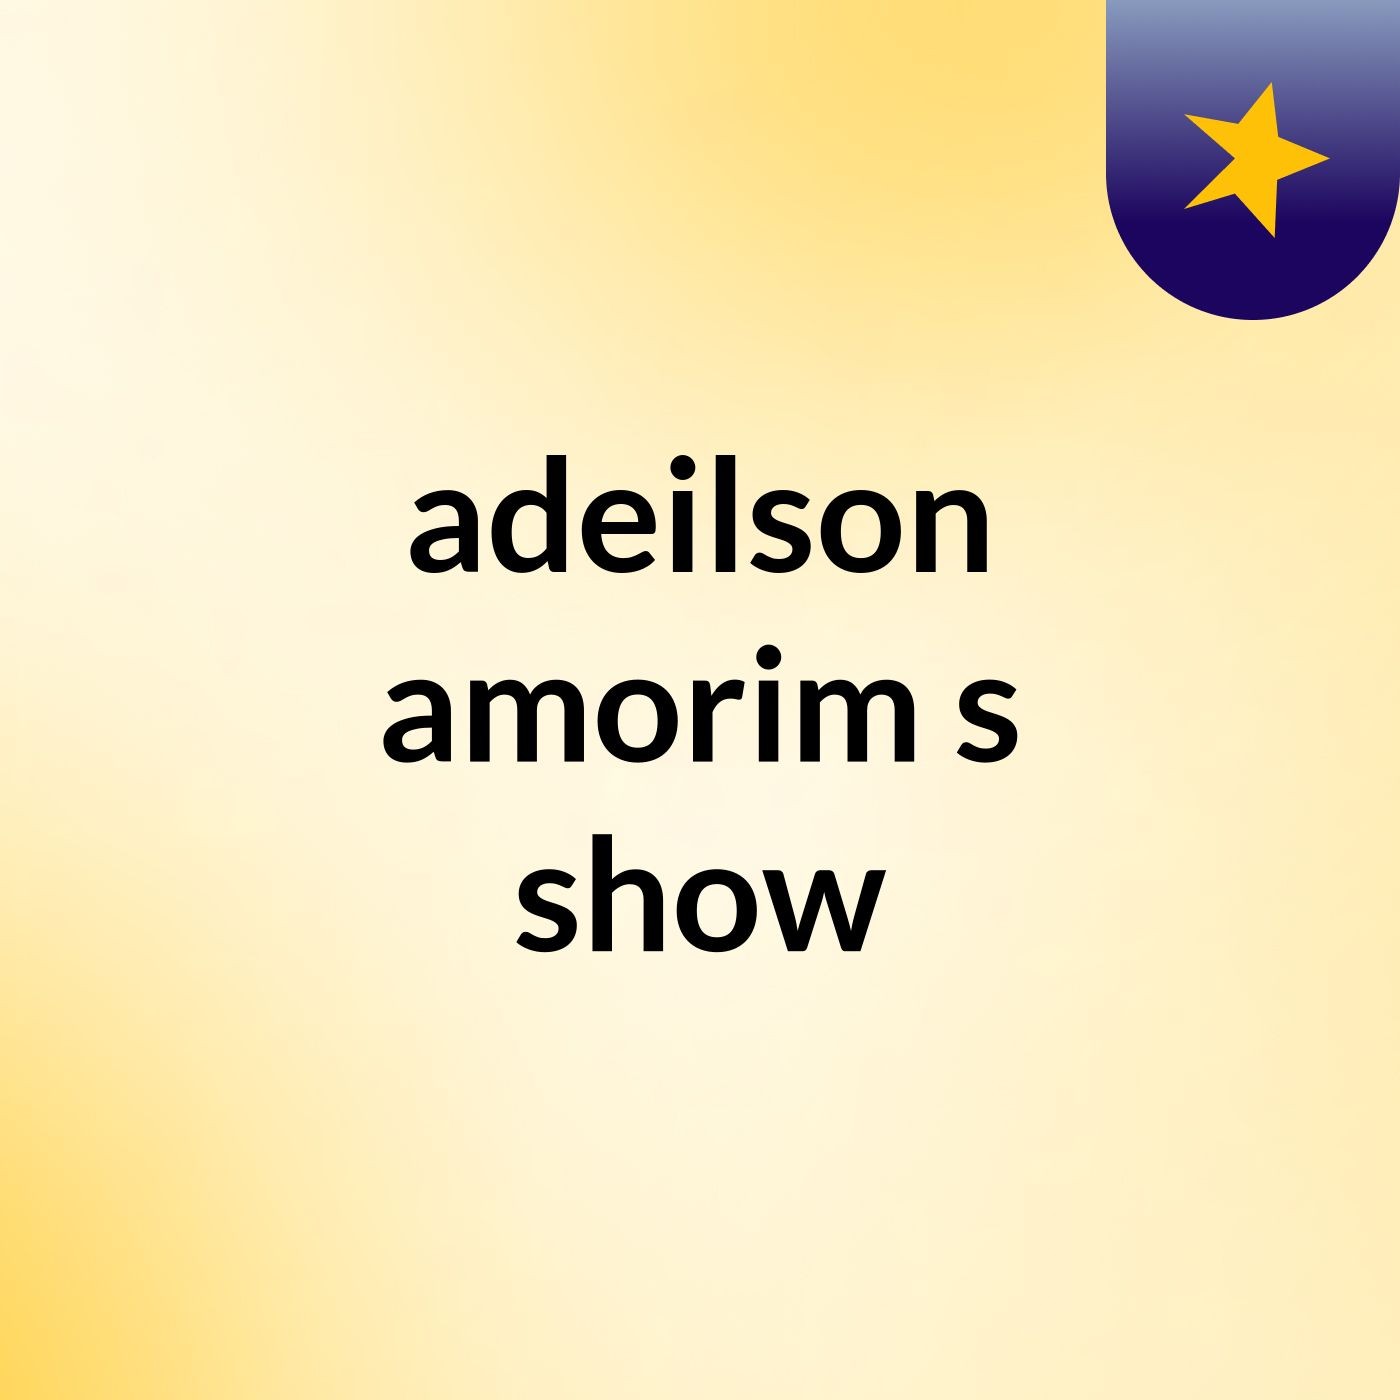 adeilson amorim's show